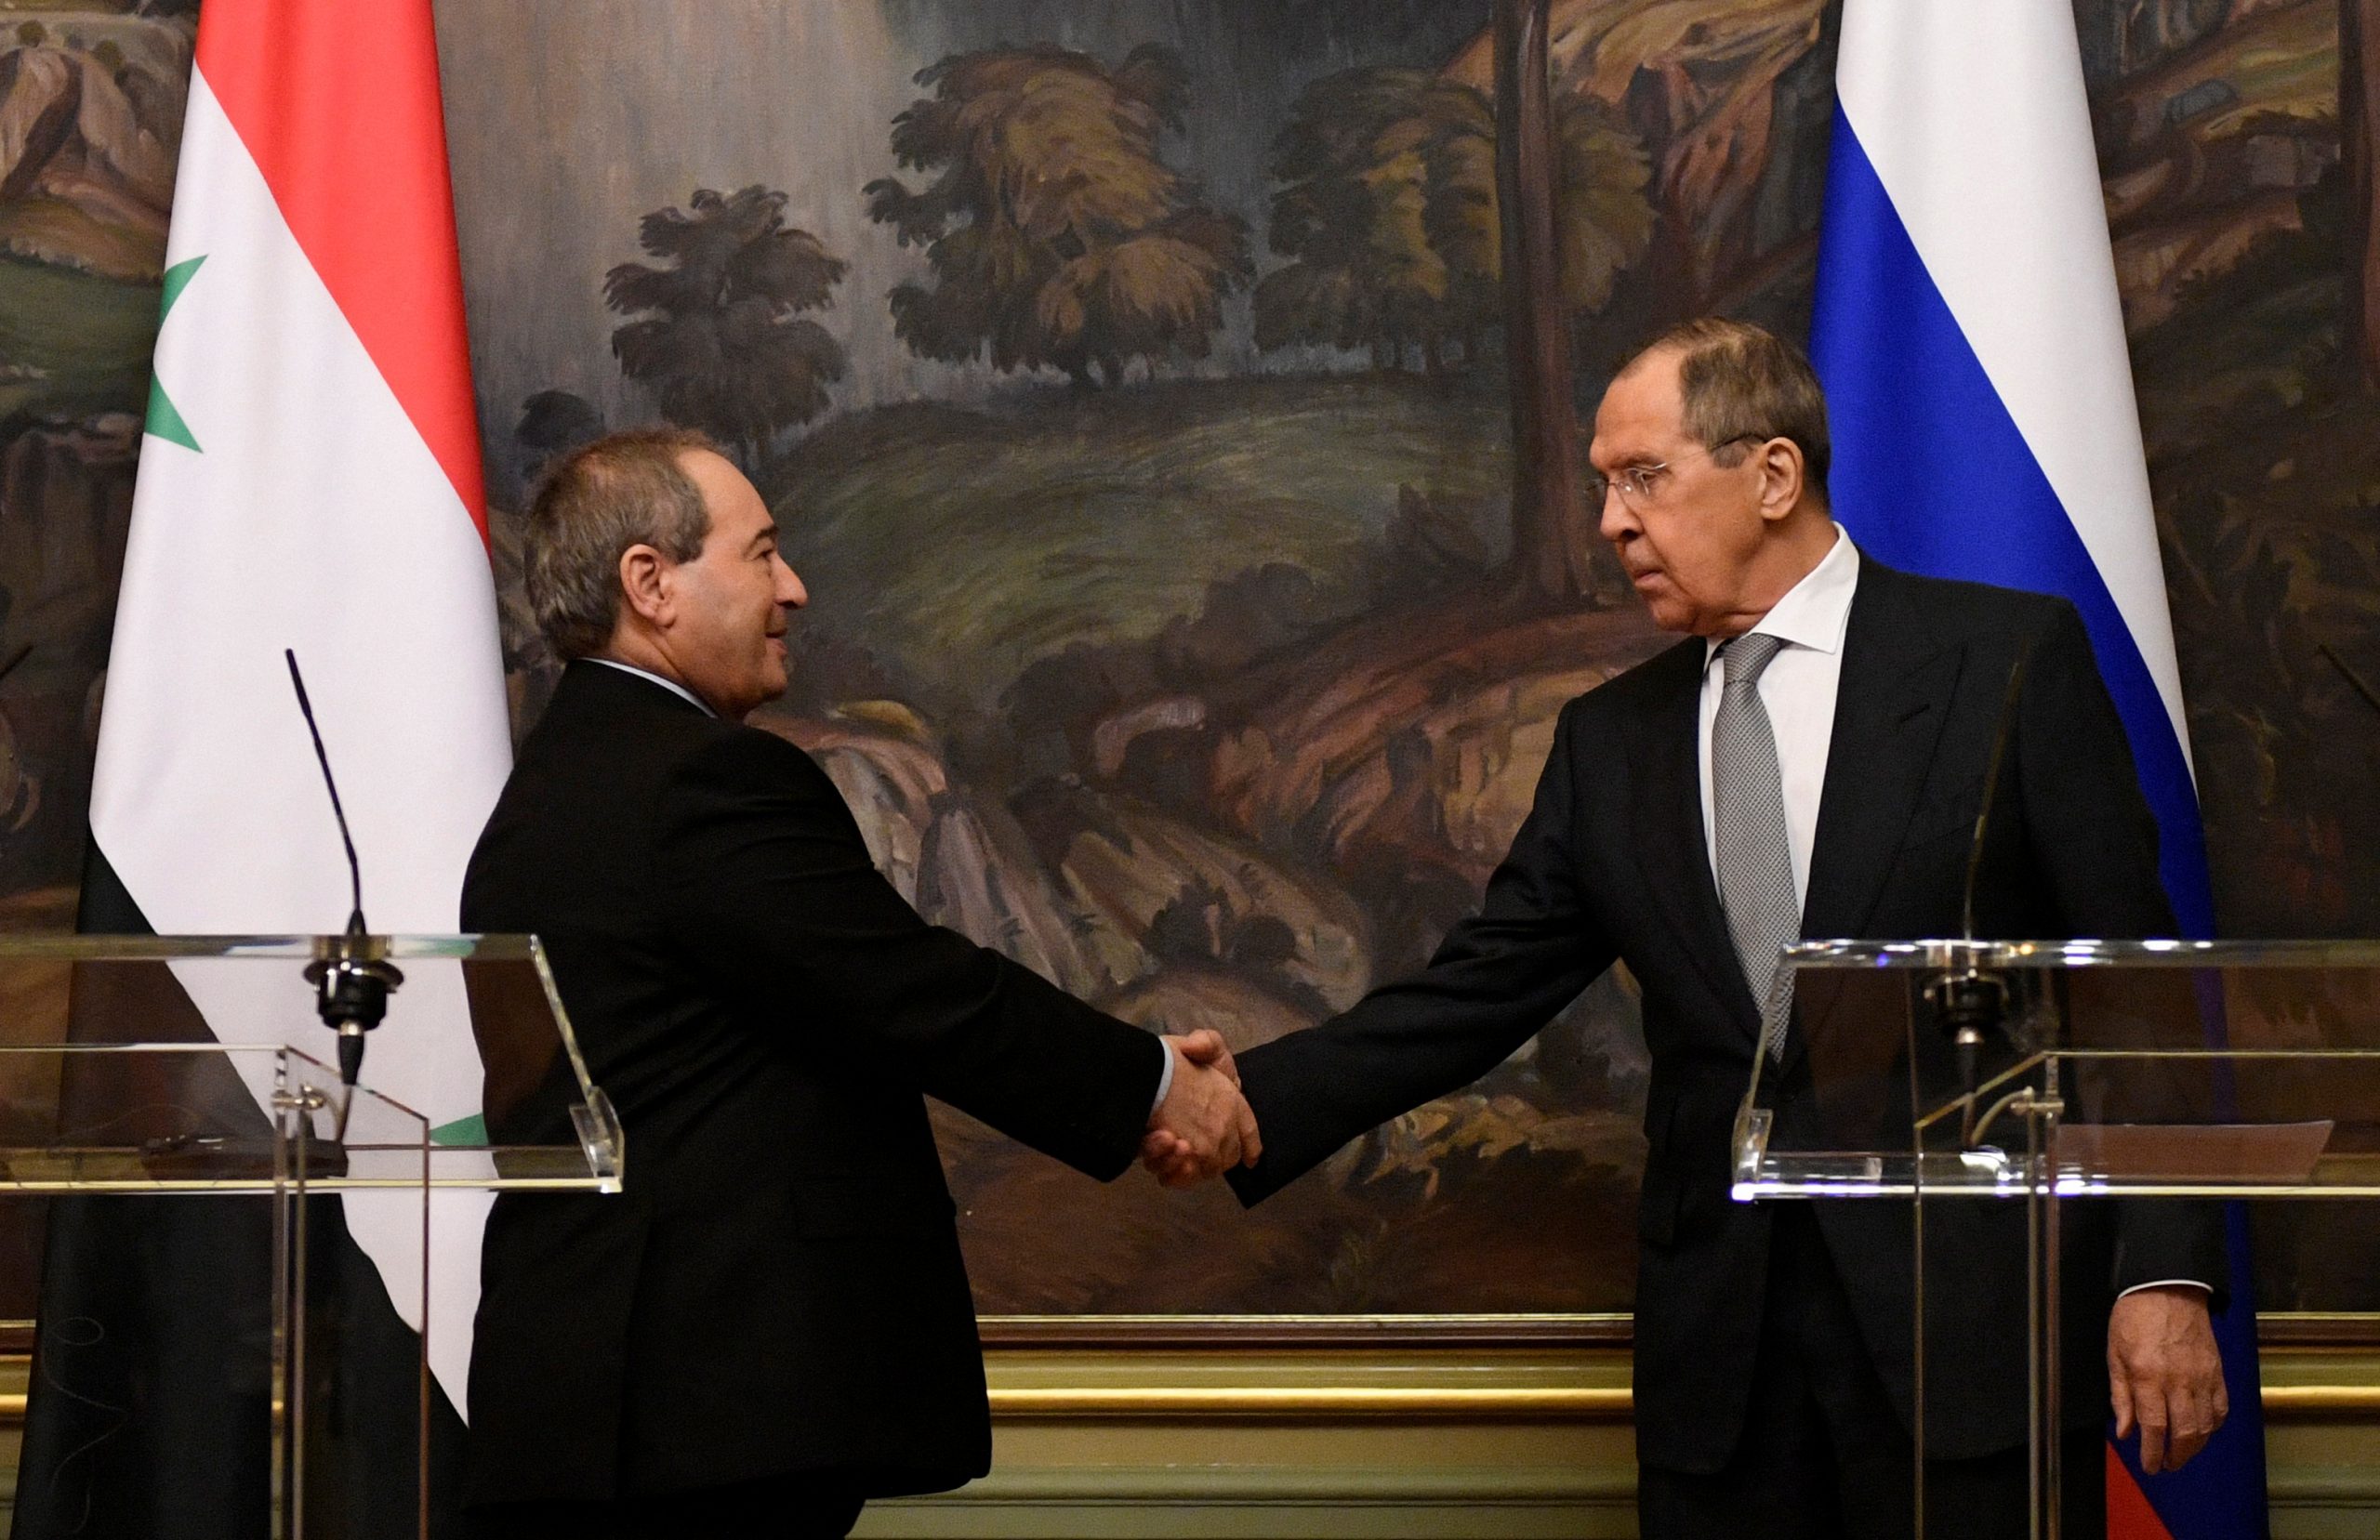 Λαβρόφ: Η Δύση δε θα υπονομεύσει τις στρατηγικές σχέσεις Ρωσίας-Συρίας